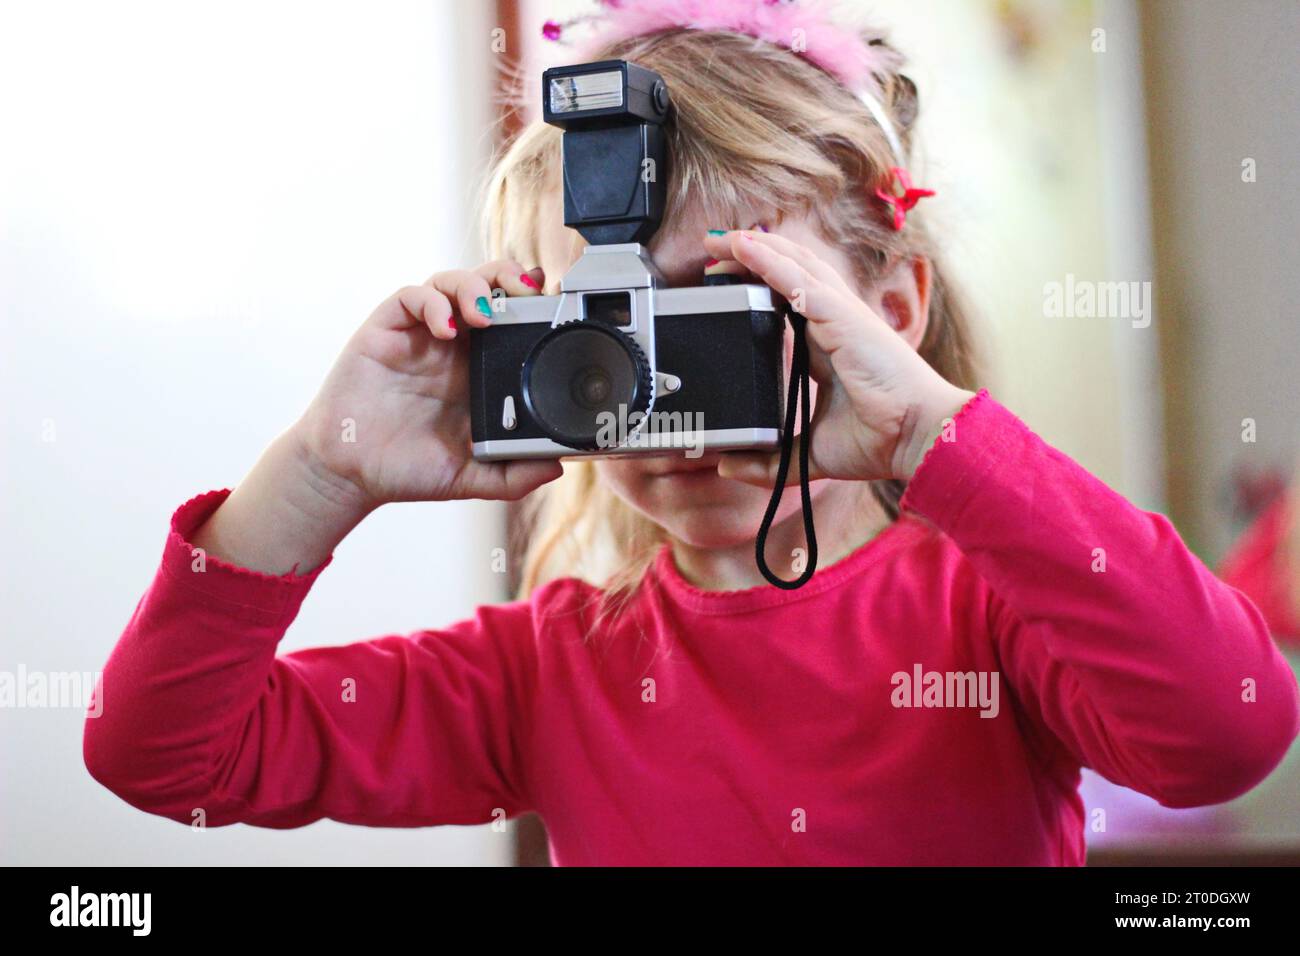 Une jeune femme vêtue d'une tenue rose vibrante se tient contre un mur, tenant avec confiance un appareil photo alors qu'elle capture sa propre vision créative Banque D'Images